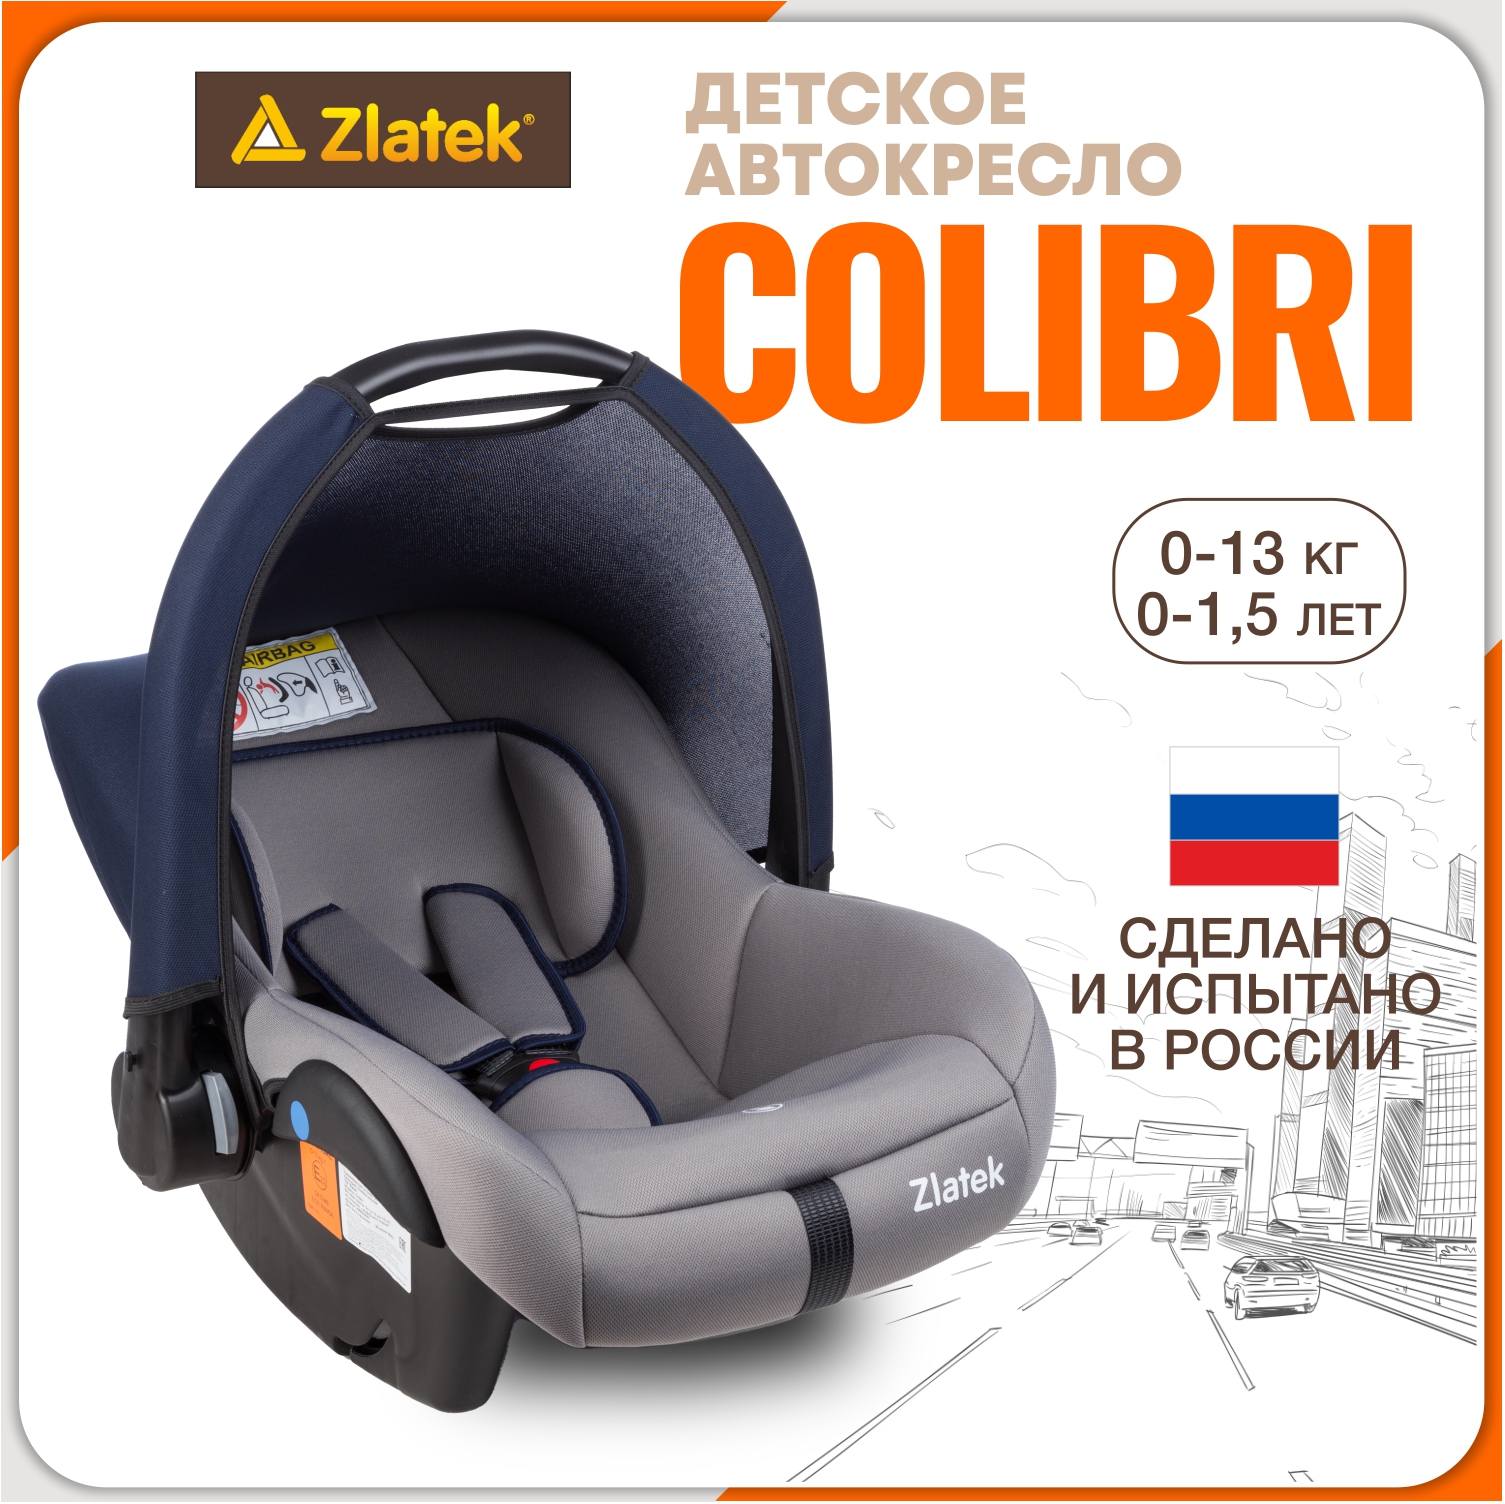 Автолюлька для новорожденных Zlatek Colibri от 0 до 13 кг, цвет сапфирово-серый автокресло zlatek colibri